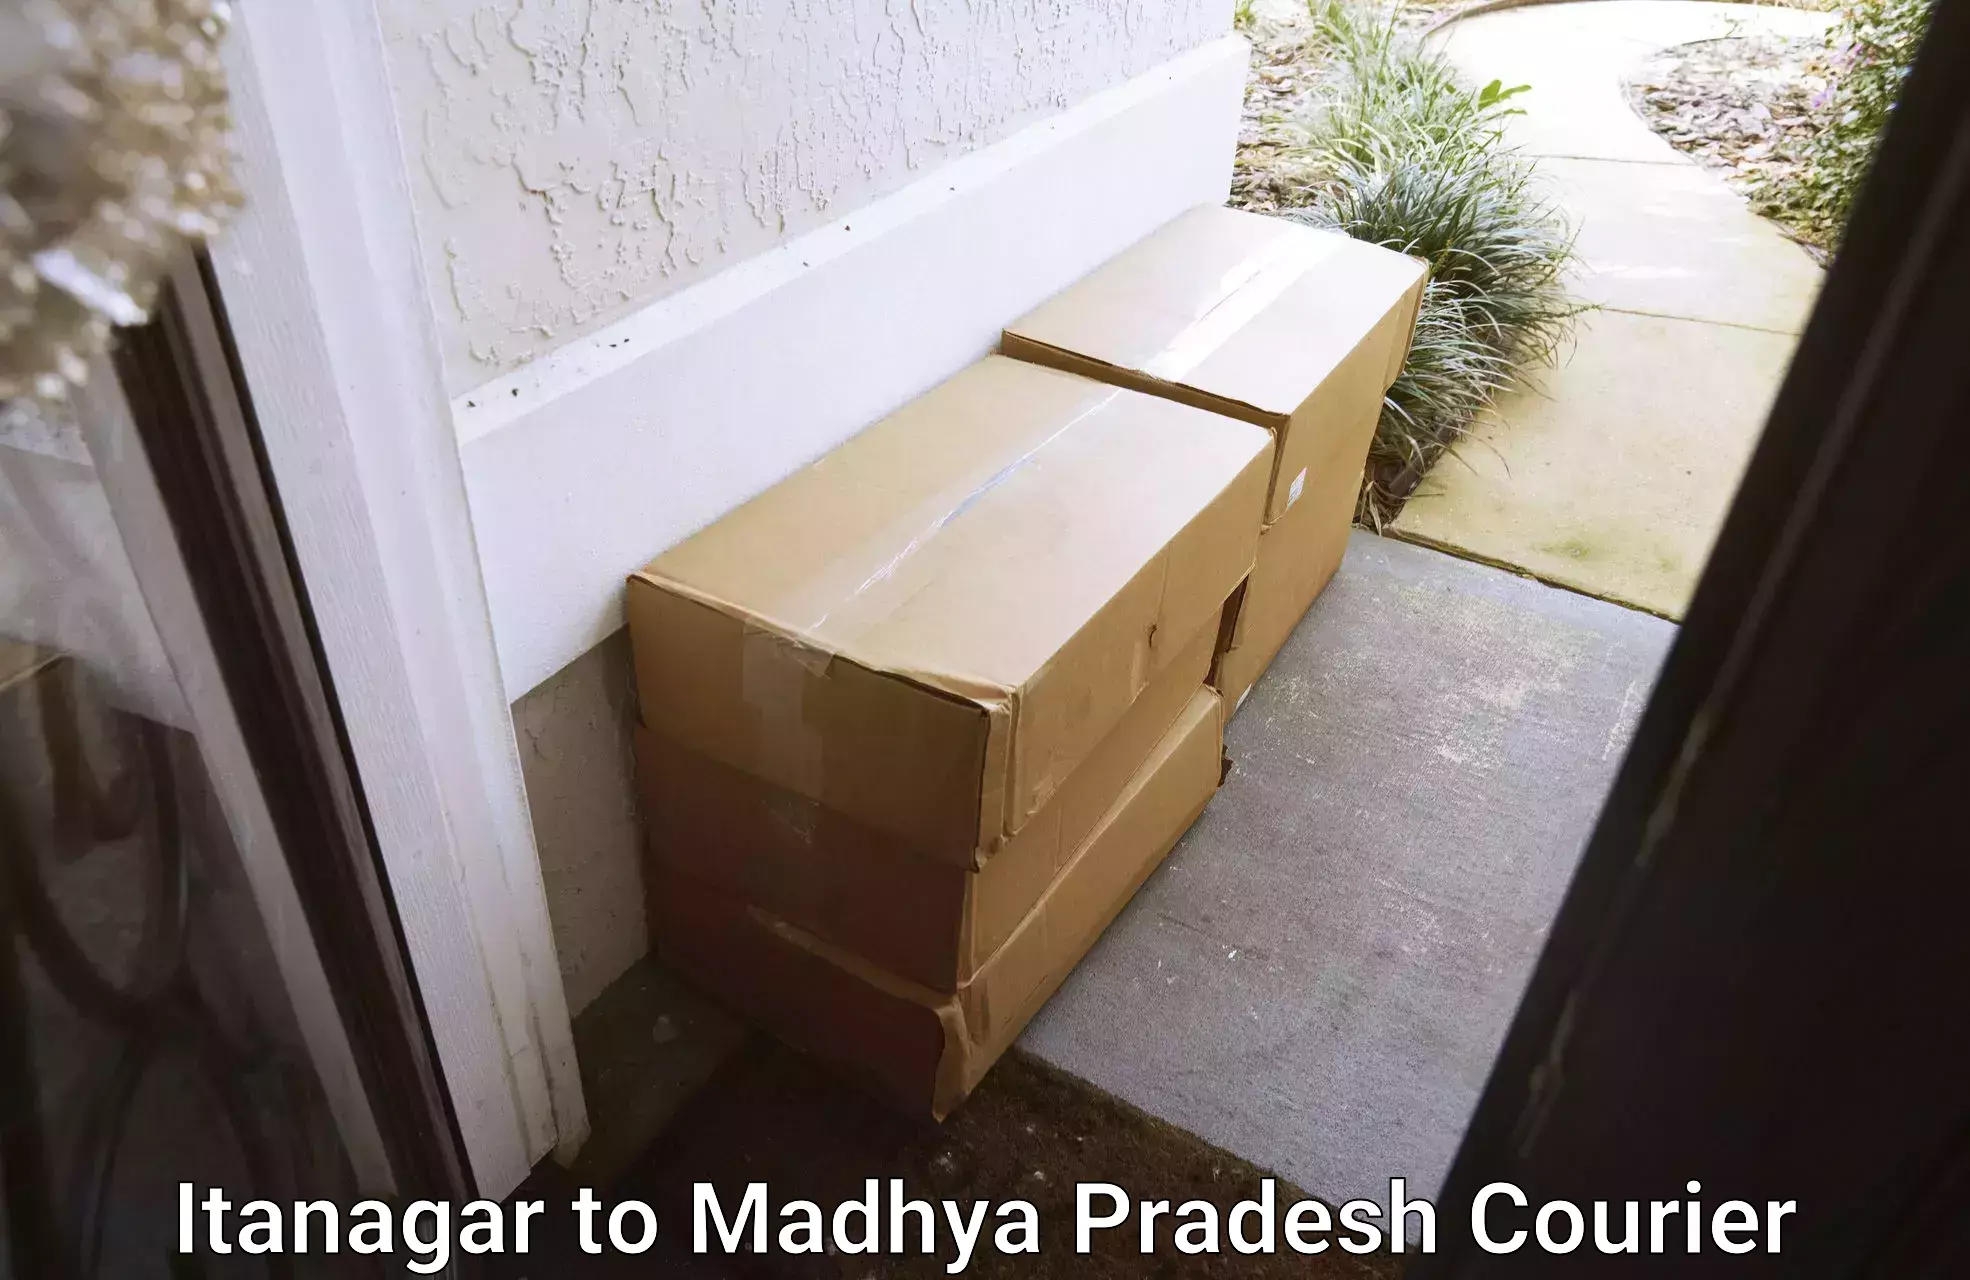 24/7 courier service Itanagar to Sagar